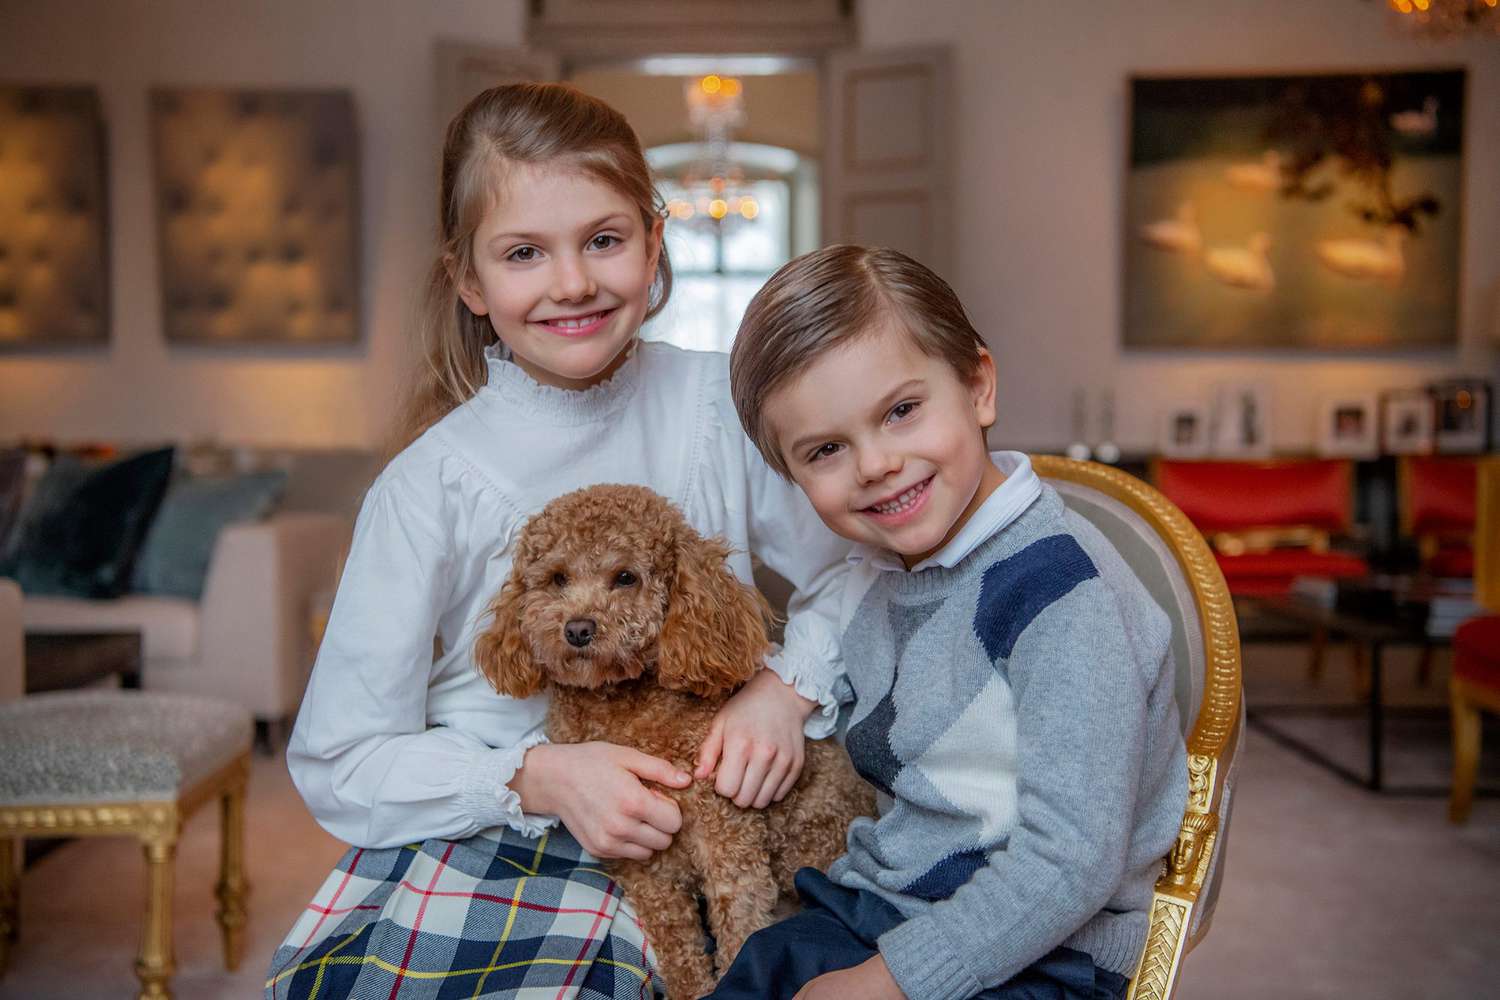 Princess Estelle, Prince Oscar and the Crown Princess family's dog Rio